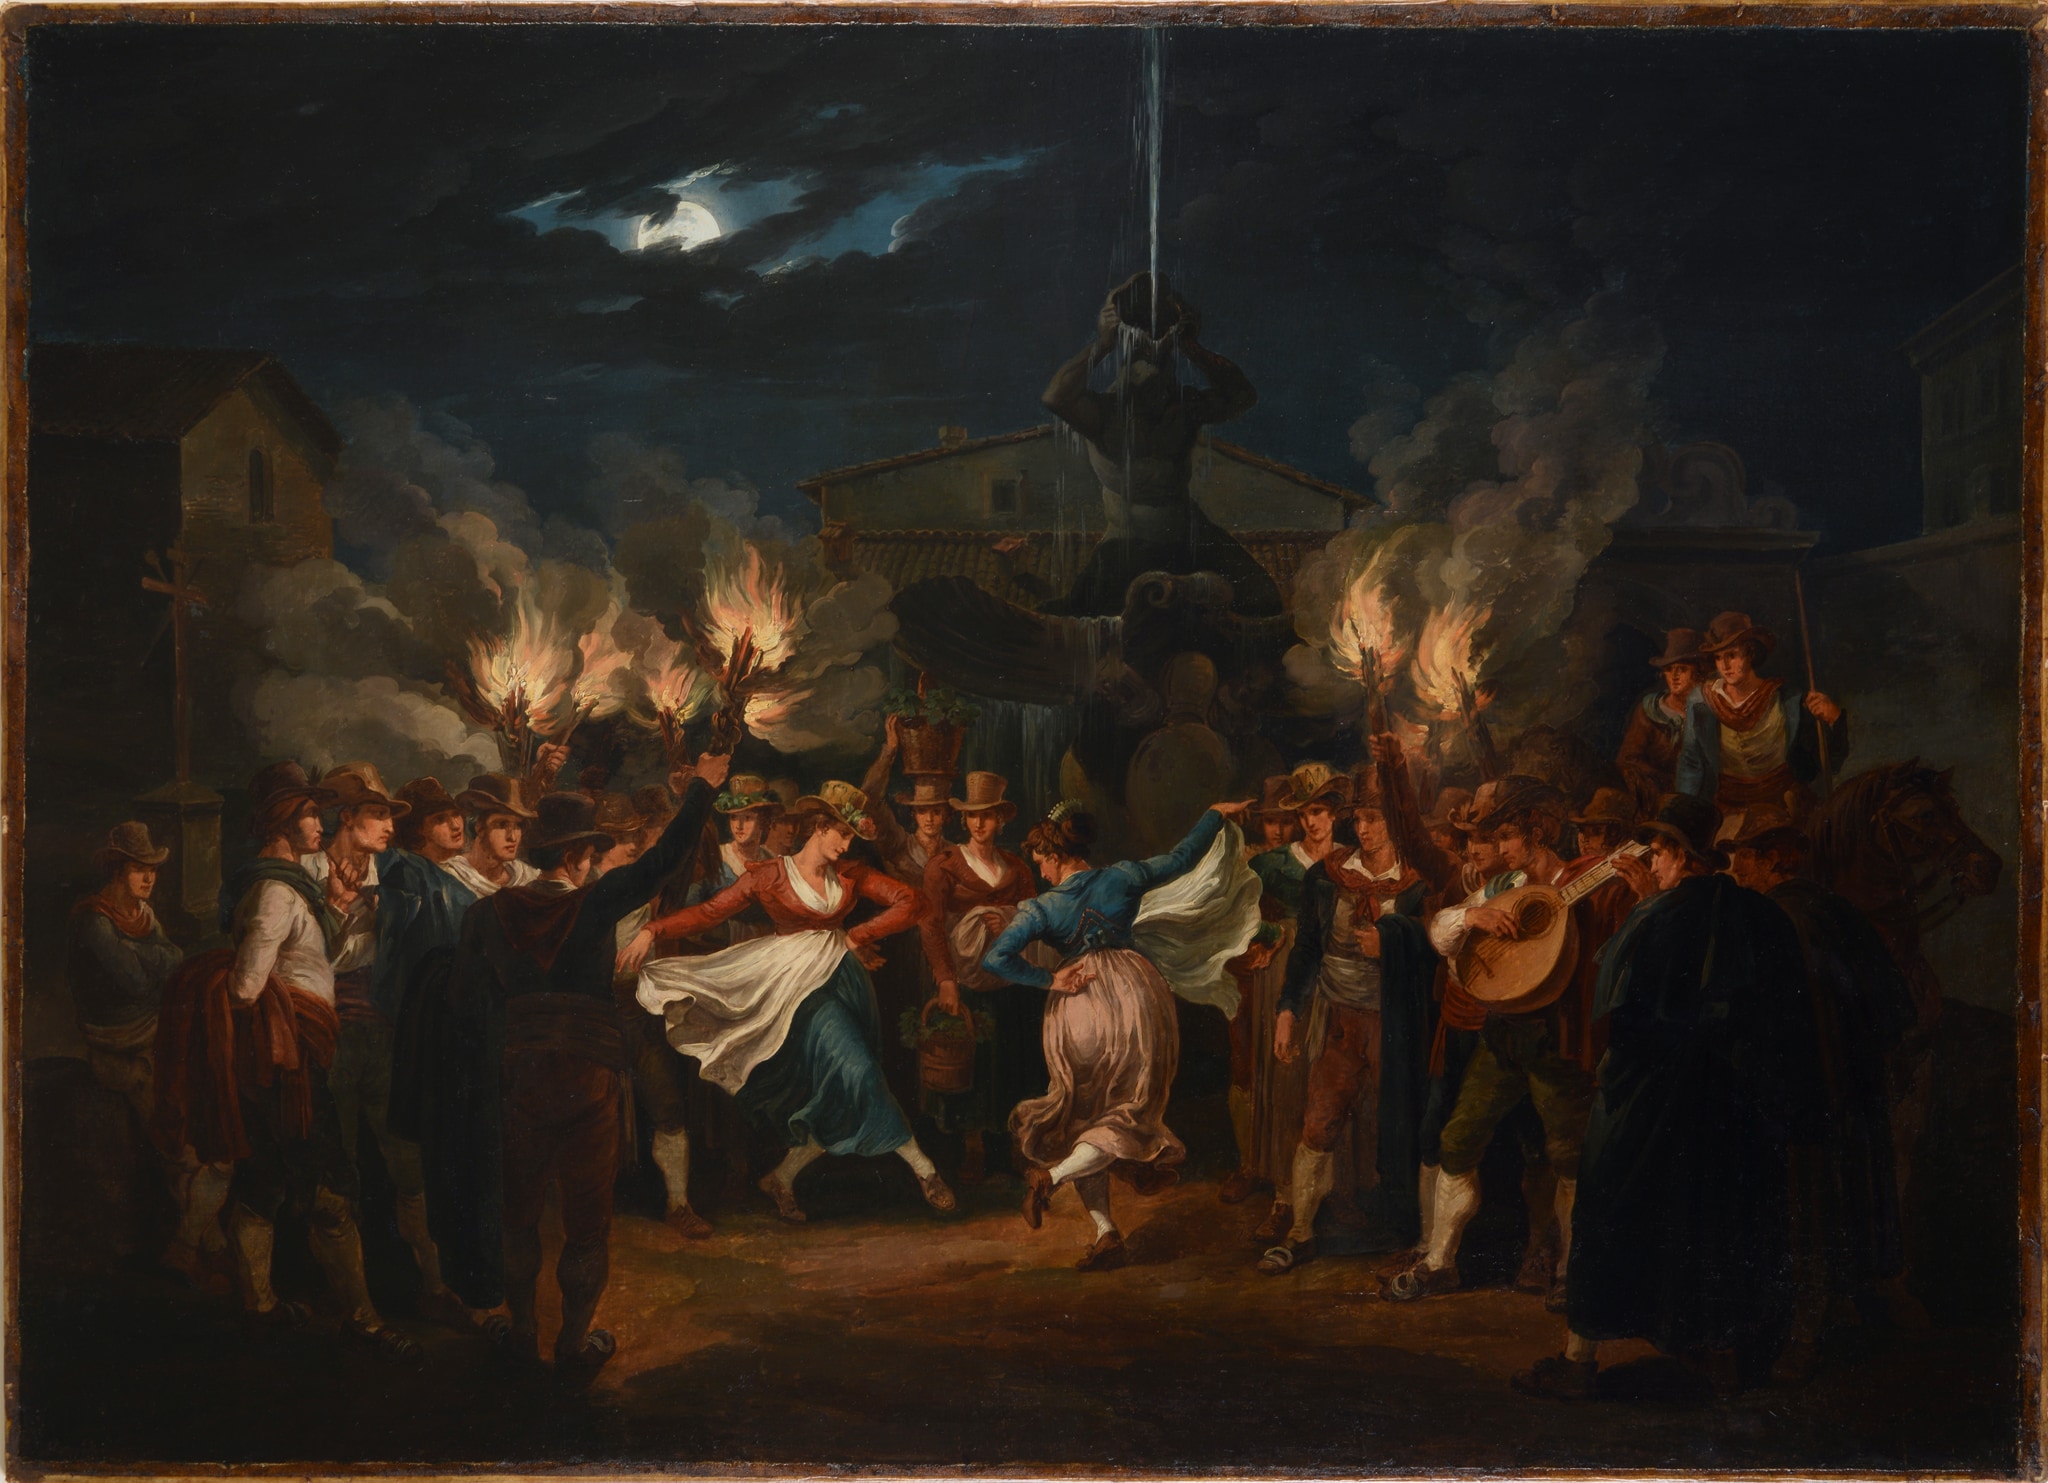 Bartolomeo Pinelli (Roma 1781-1835) “Saltarello” notturno delle “Mozzatore” in piazza Barberini", 1821. Olio su tela, 95 x134 cm